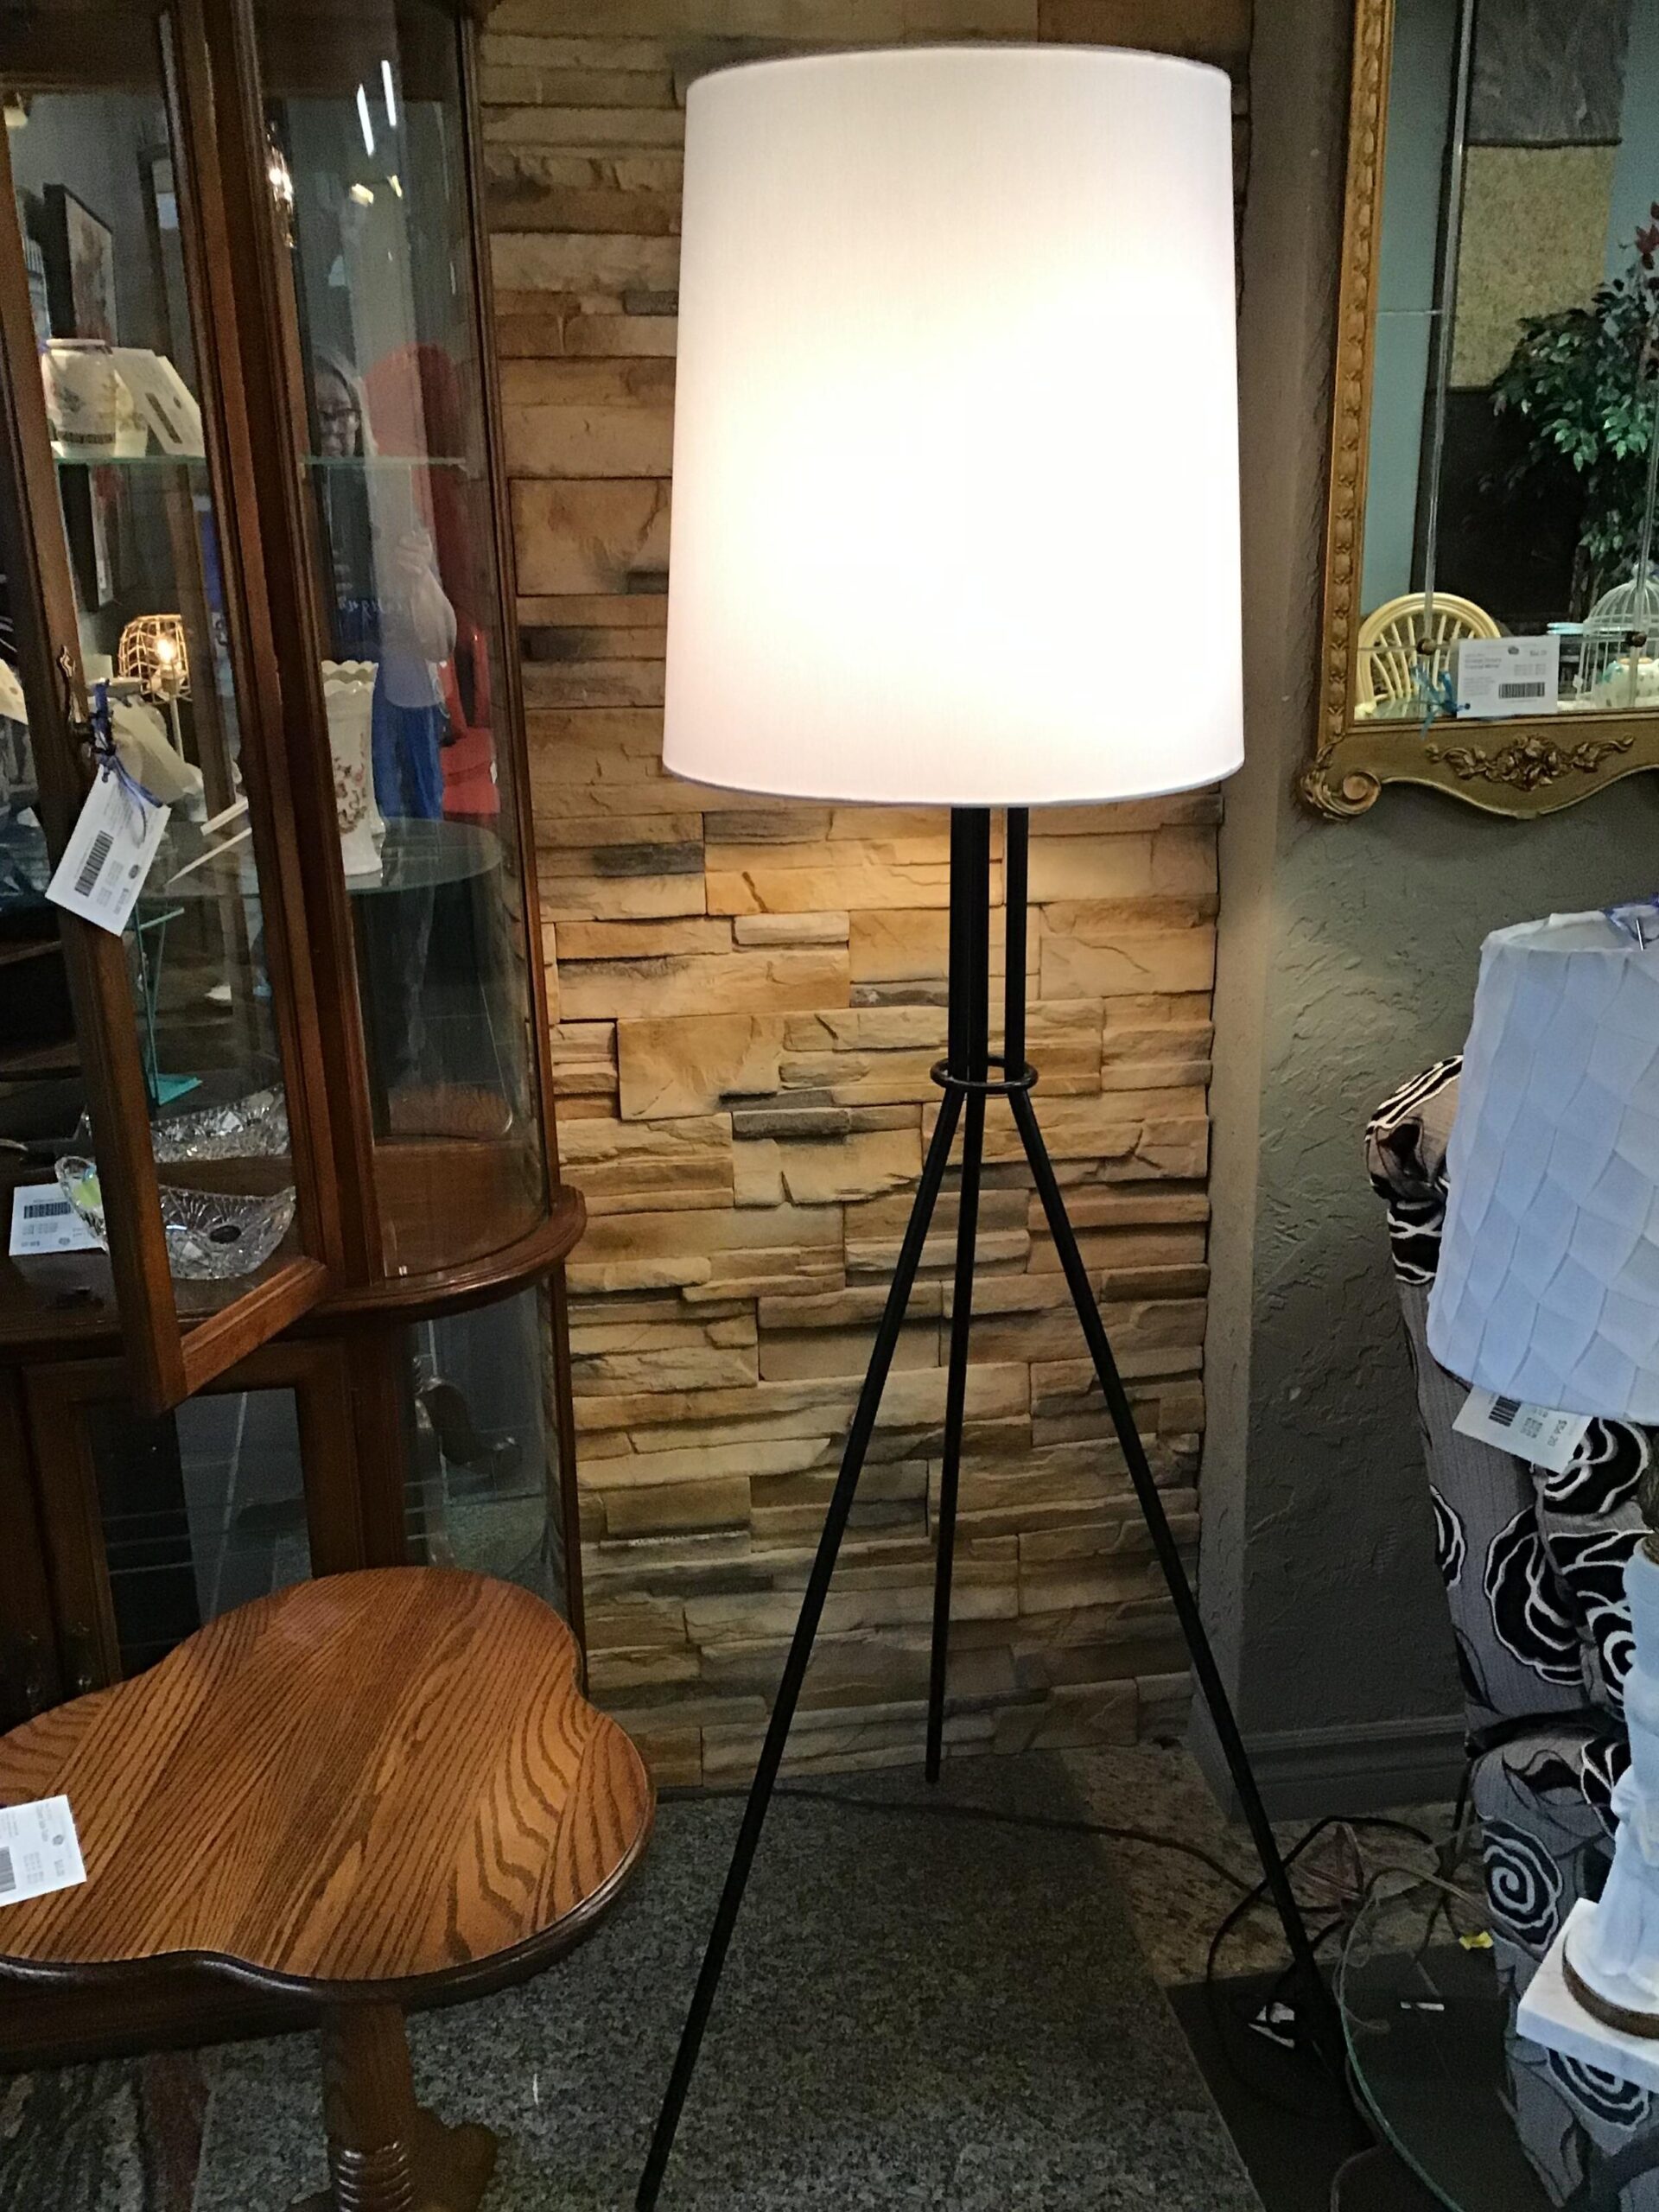 Unique Floor Lamp